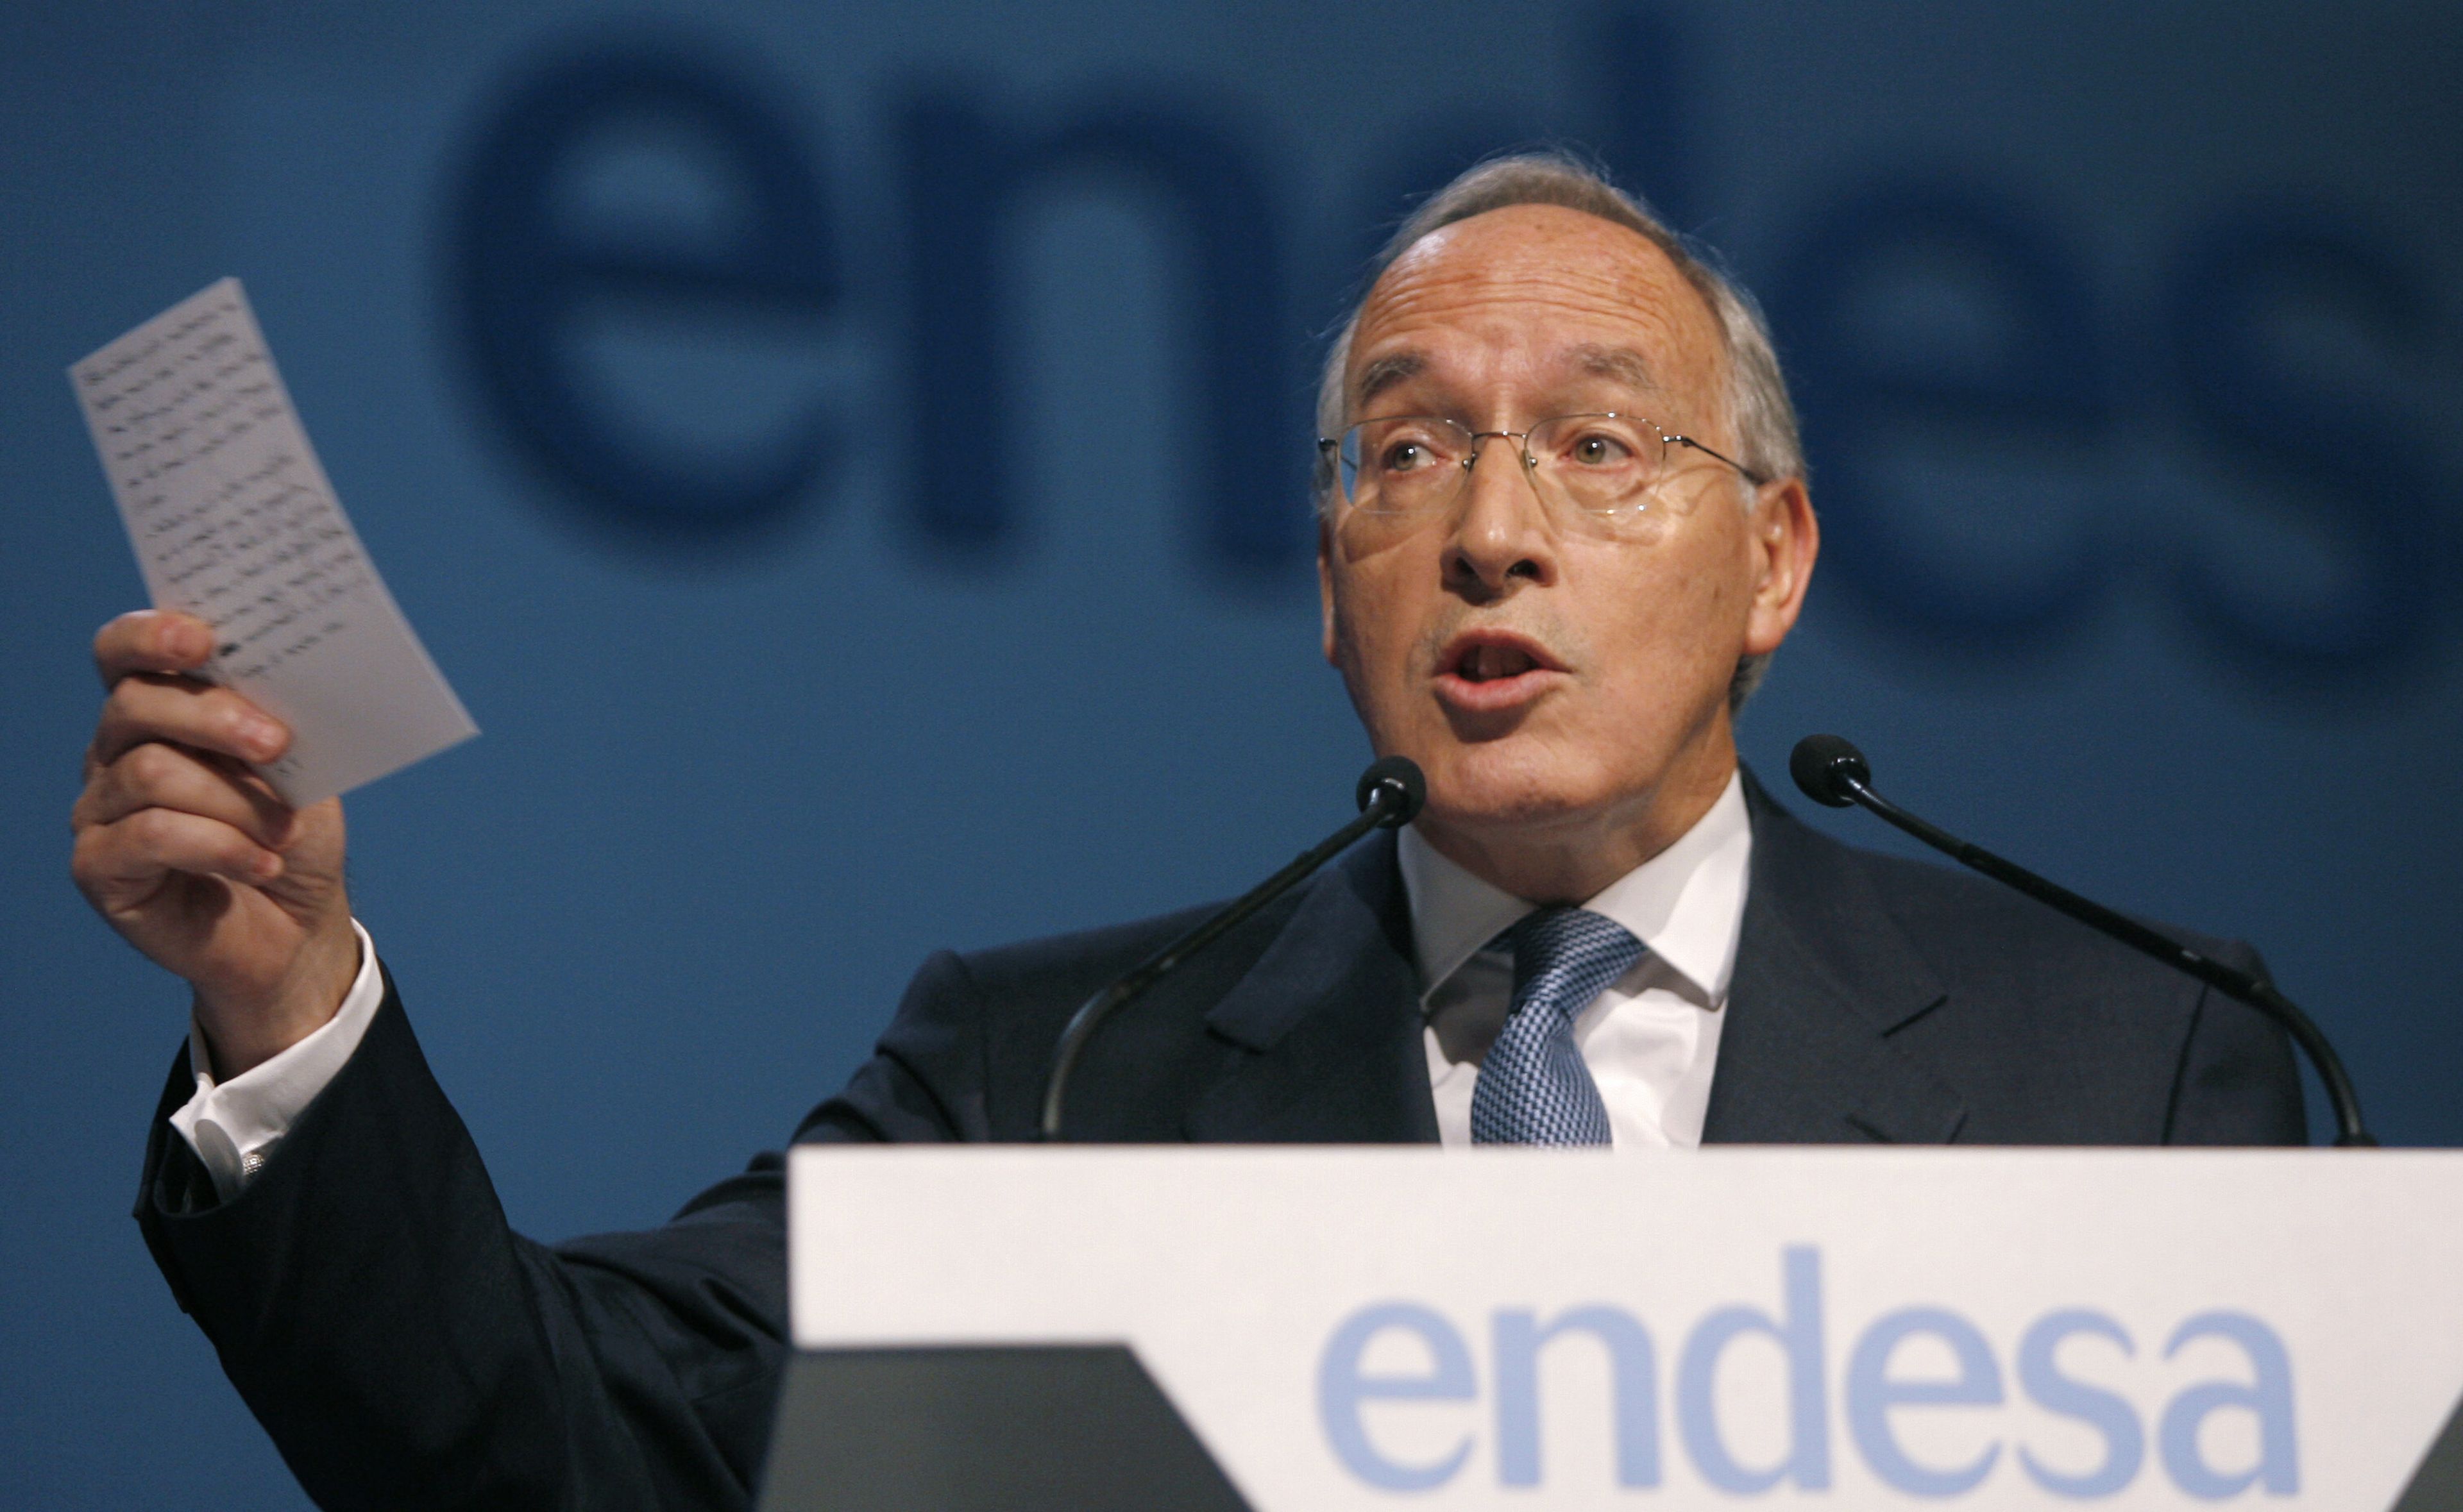 Manuel Pizarro, CEO Endesa